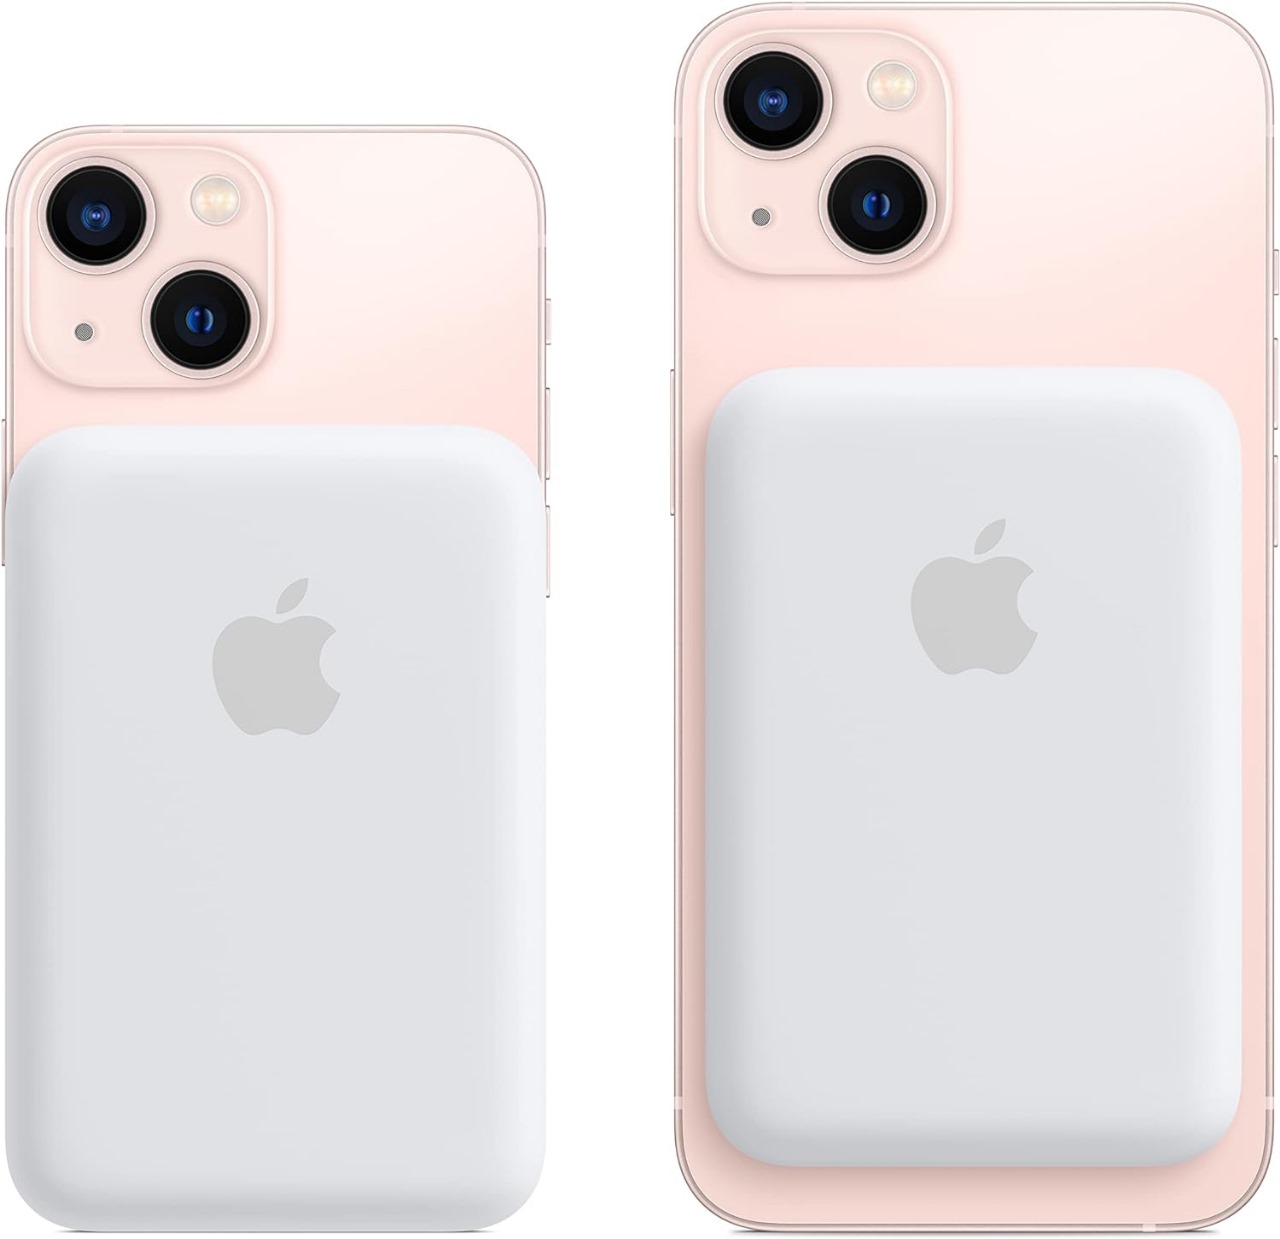 Apple actualiza su MagSafe Battery Pack para cargar más rápido los iPhone, Gadgets